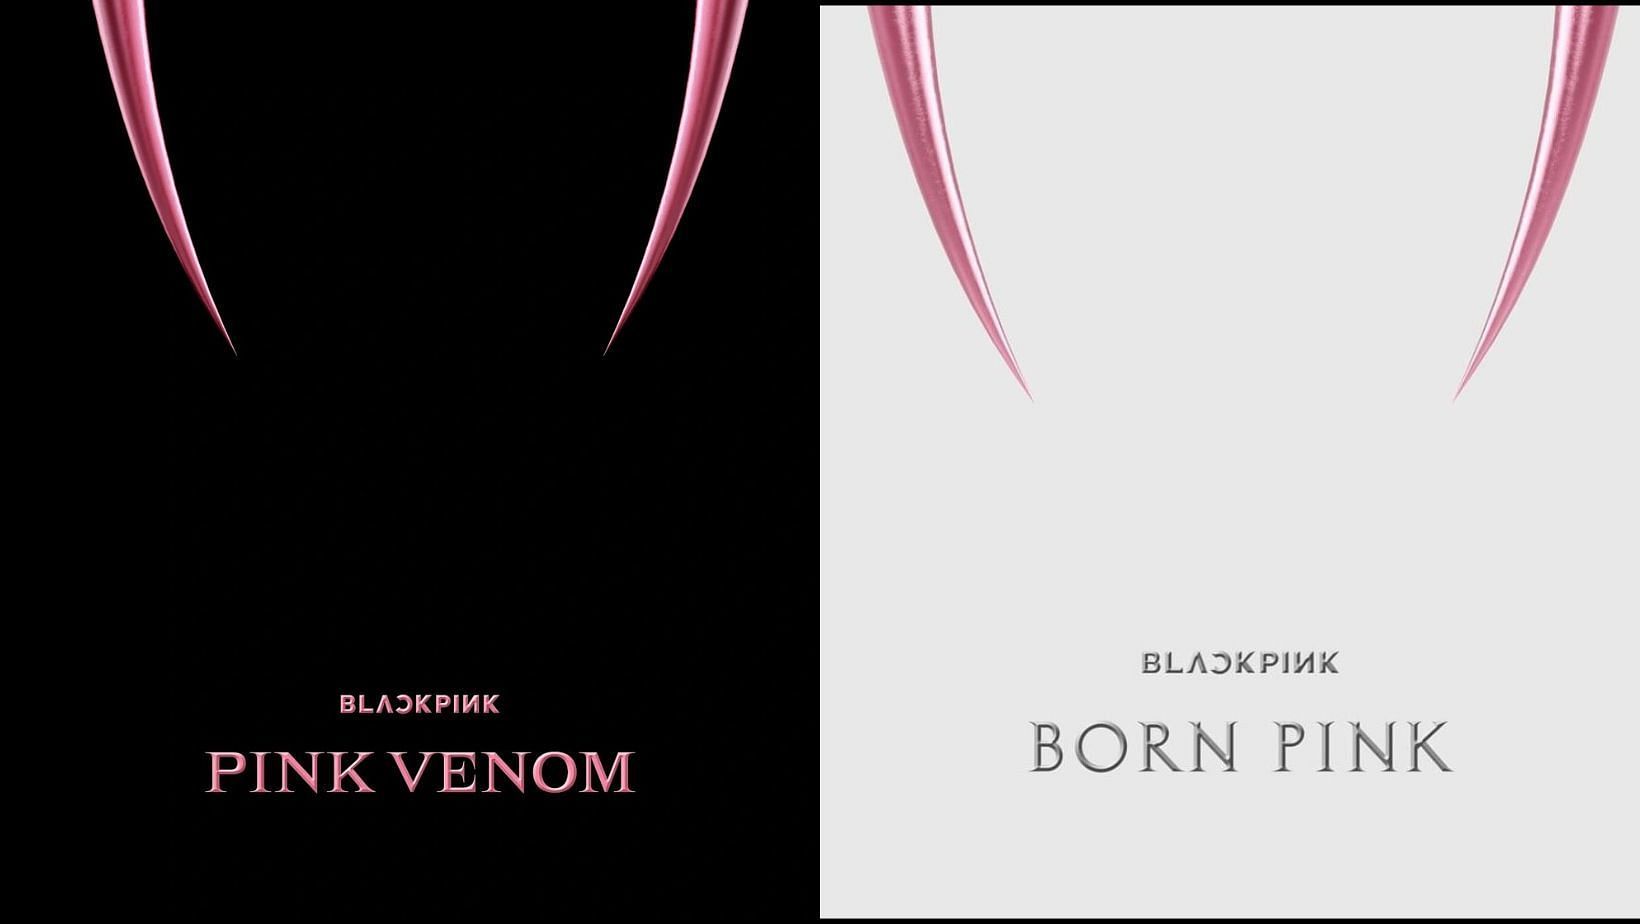 Born Pink and Pink Venom 2022 (Images via @BLACKPINK)